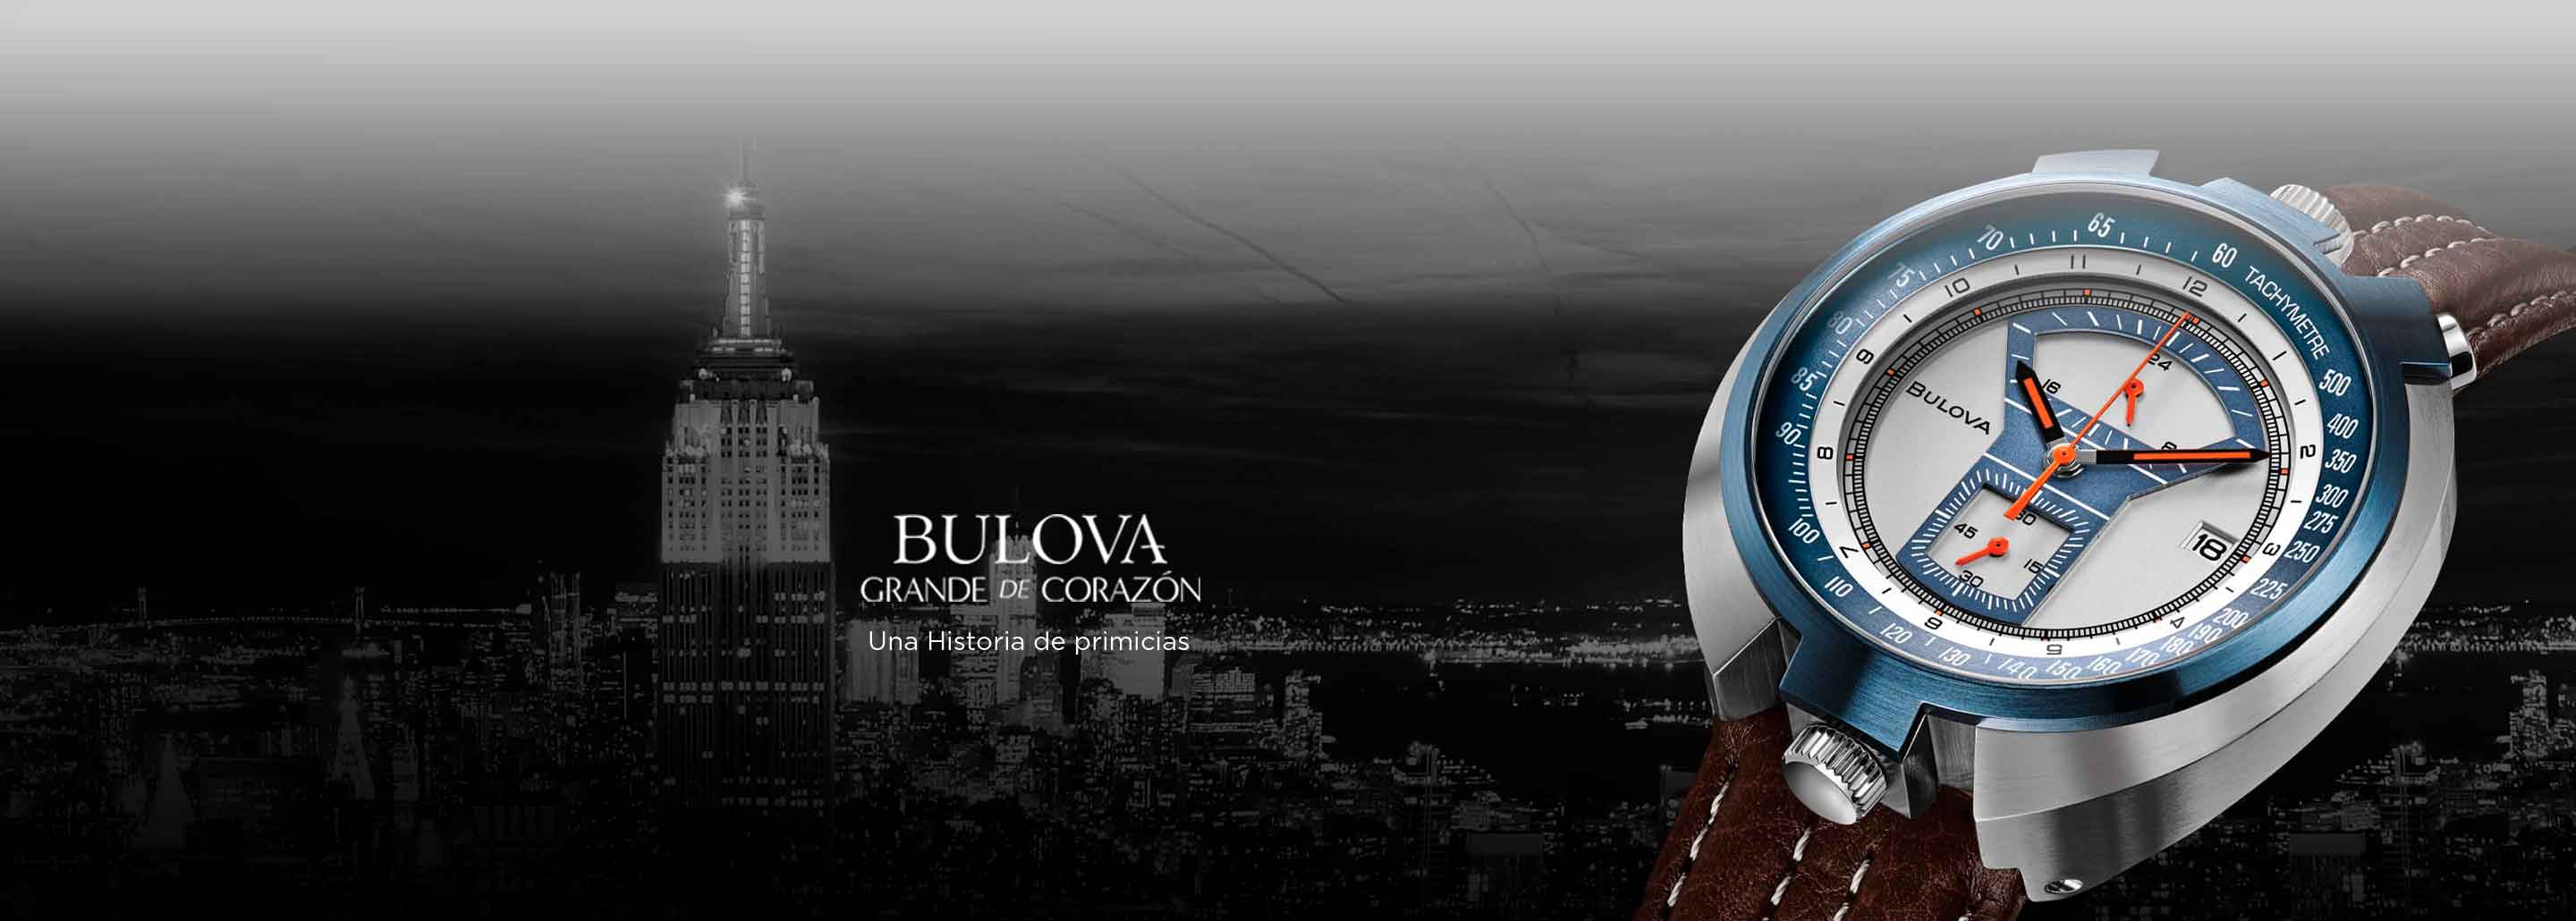 Imagen de un reloj de la marca BULOVA, color plateado con caratula azul y extensible cafe, de fondo una ciudad en la boche con las luces de los edificios prendidas. BULOVA